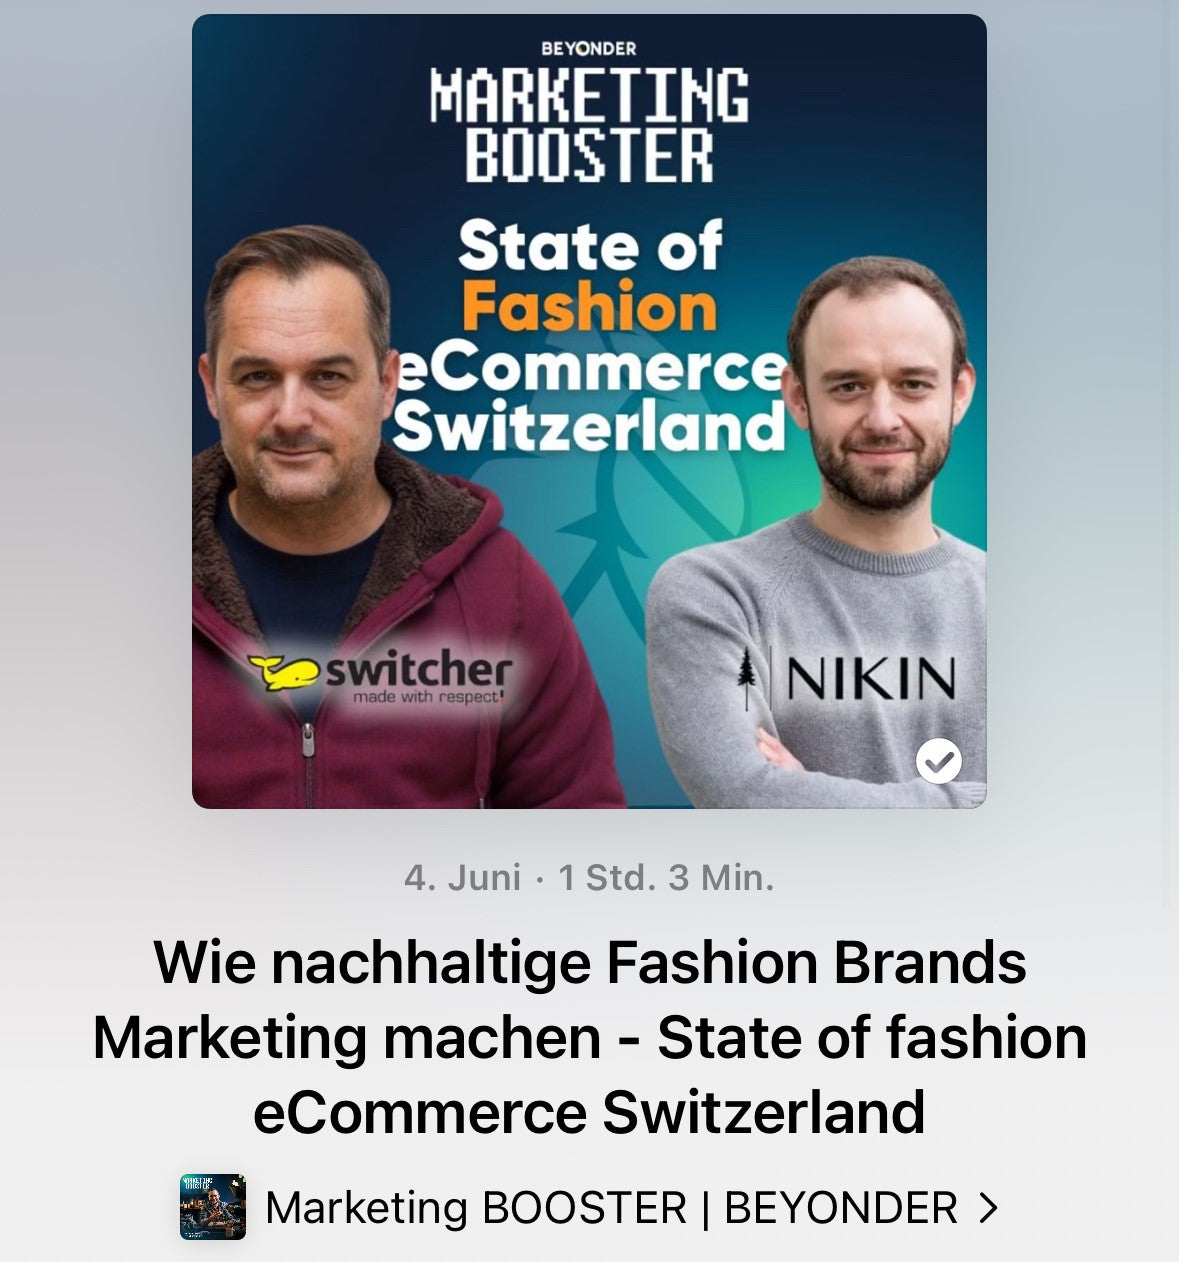 Wie nachhaltige Fashion Brands Marketing machen - State of fashion eCommerce Switzerland